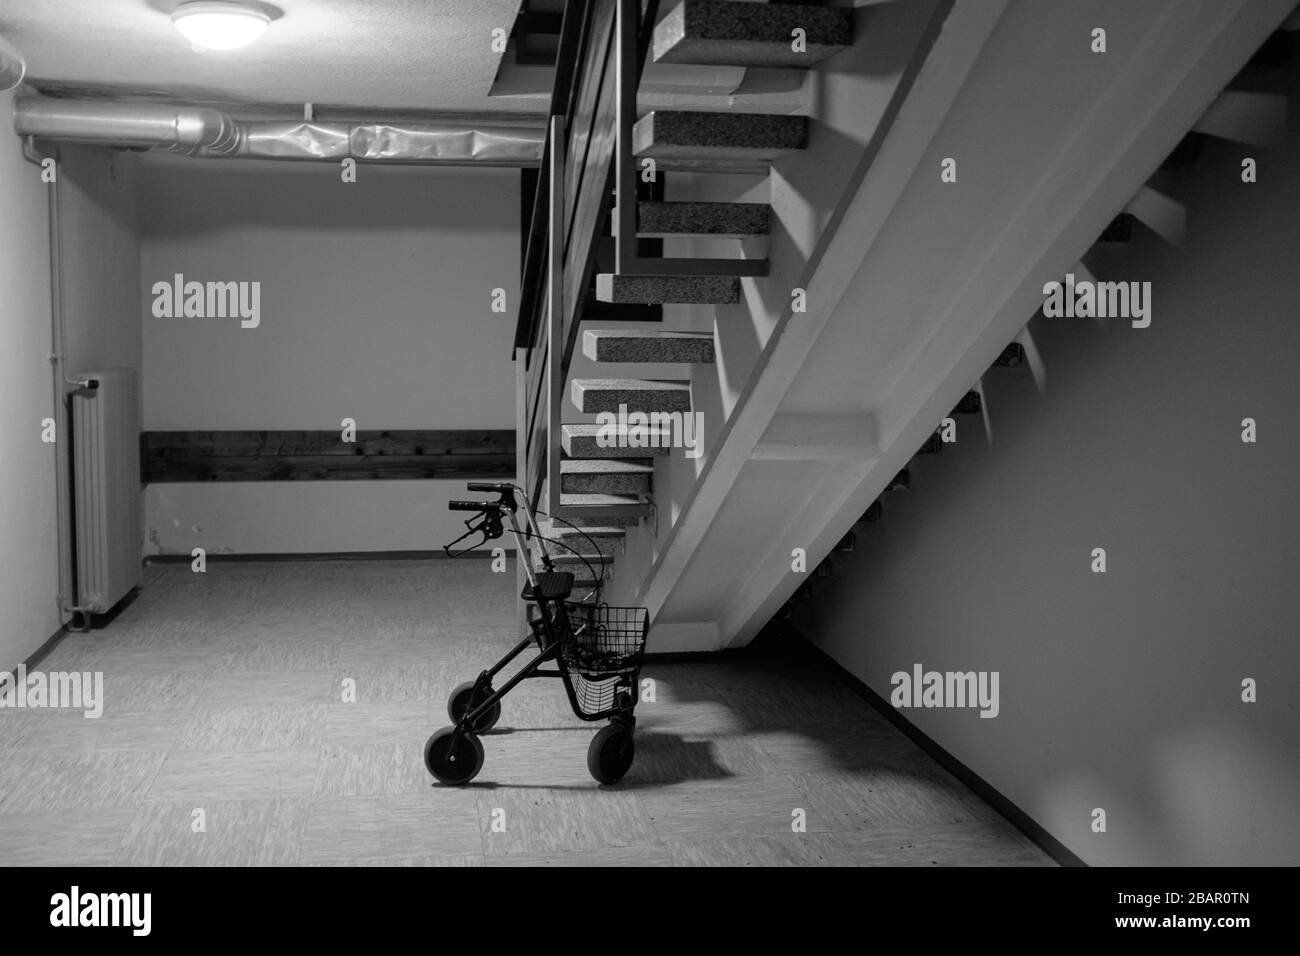 Kranj, Slowenien, 21. März 2020: Ein Geher für Senioren wird während des landesweiten Sperrens des Coronavirus im Untergeschoss eines Apartmentgebäudes geparkt. Stockfoto